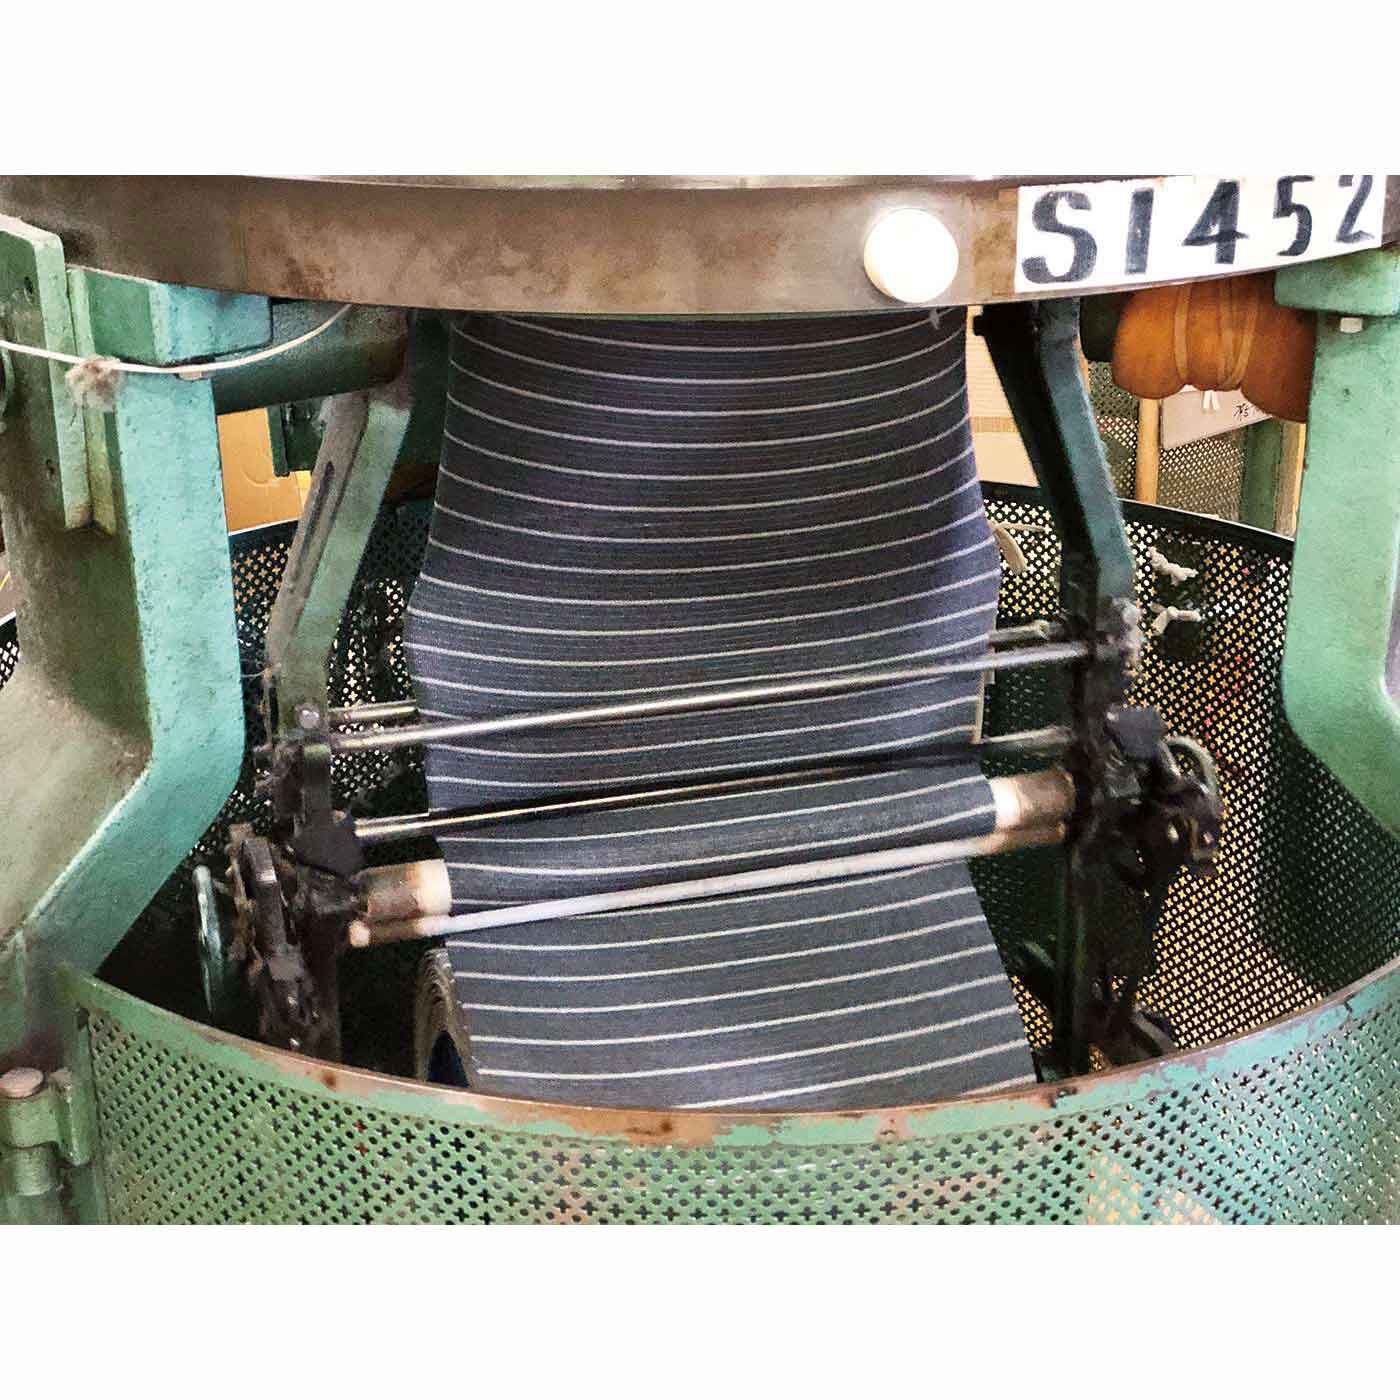 Real Stock|ボーイッシュカラーのパイルピローカバー〈ボーダー〉|丸編みのパイル生地は、編み機の下から出て、巻かれていきます。この丸編み機は1時間で約30mほどしか編めず、1日の生産数には限りがあります。